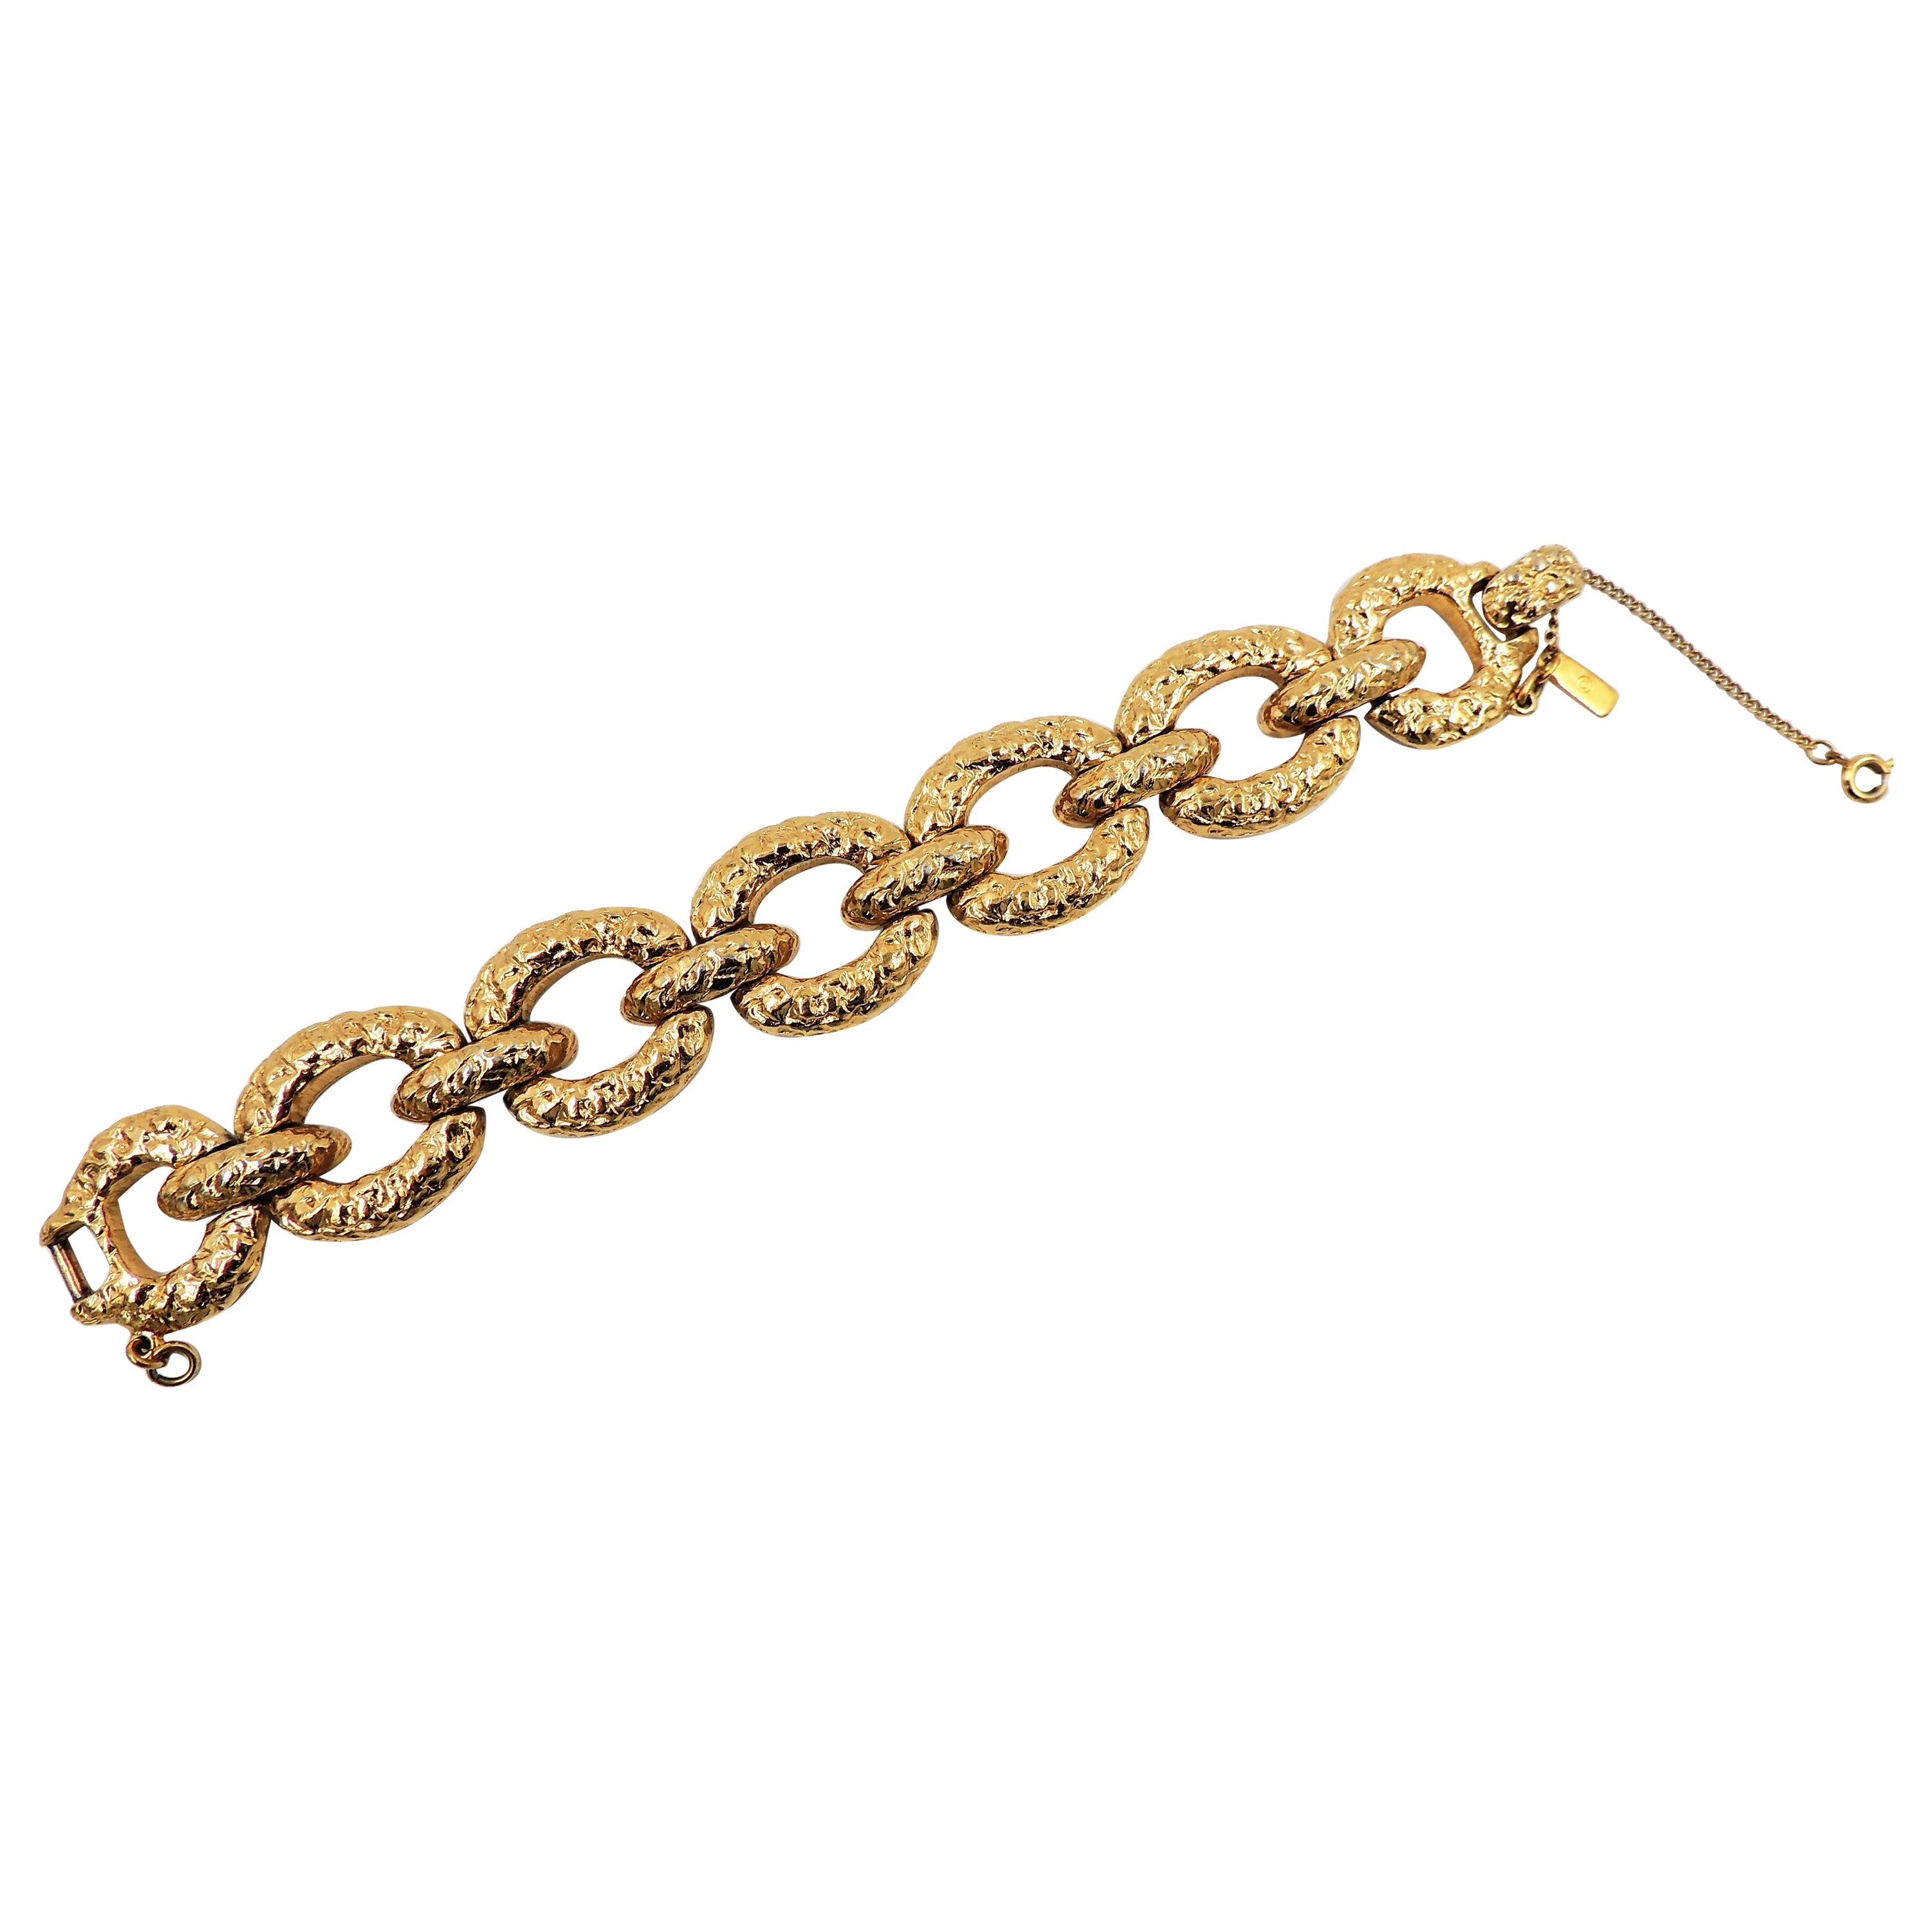 Vintage Signed Monet "Gold Nugget" Wide Link Bracelet, 1973 For Sale